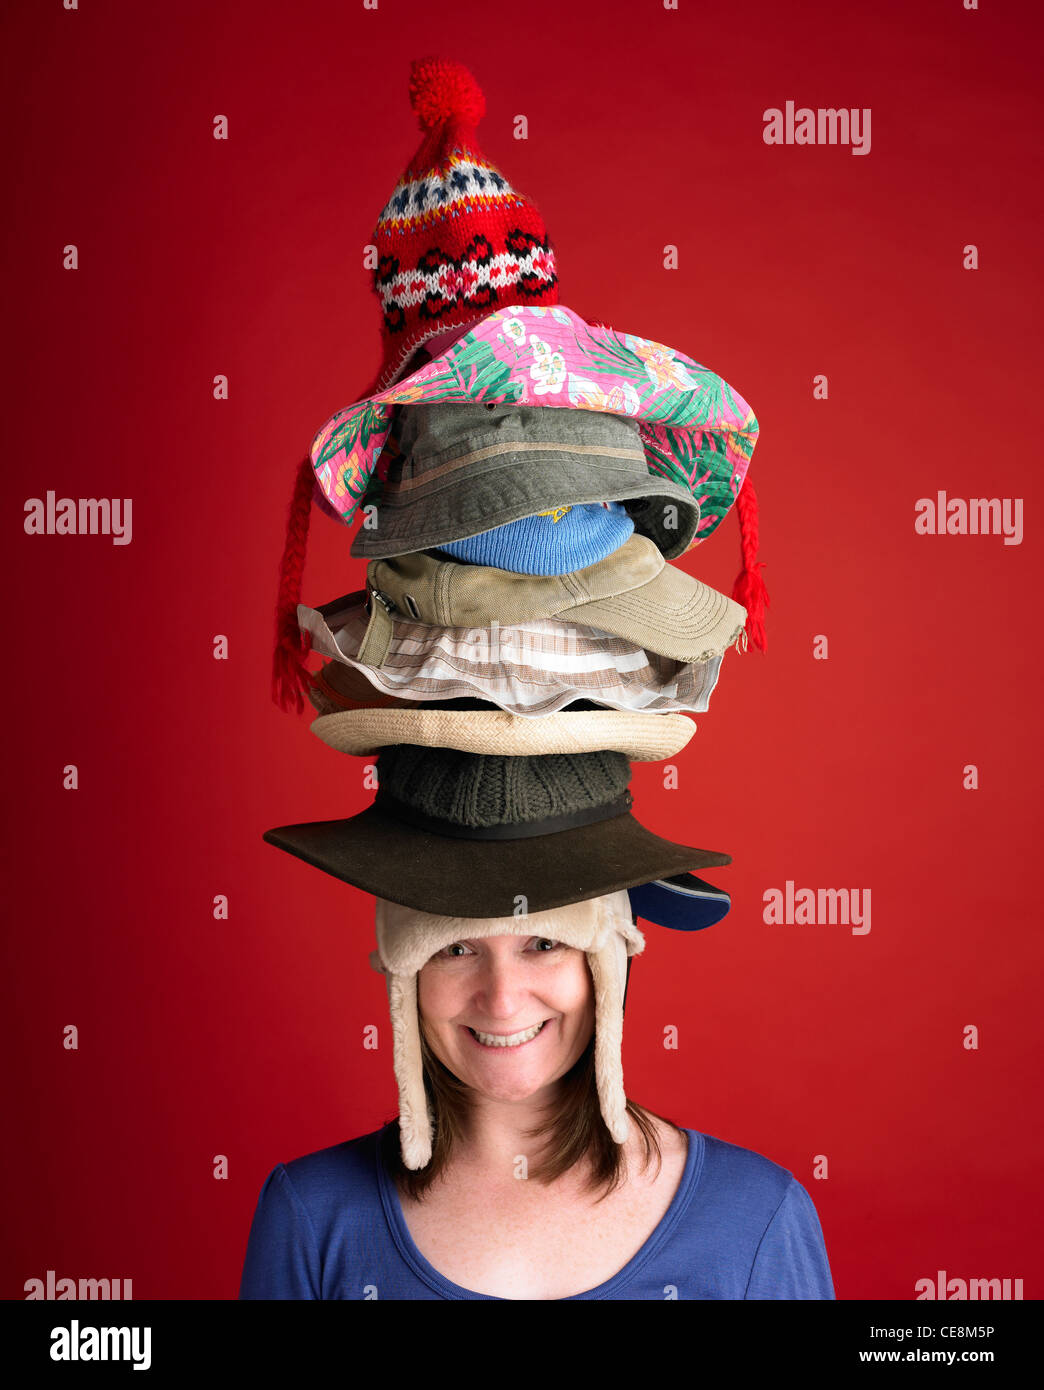 Frau trägt viele Hüte Stockfotografie - Alamy